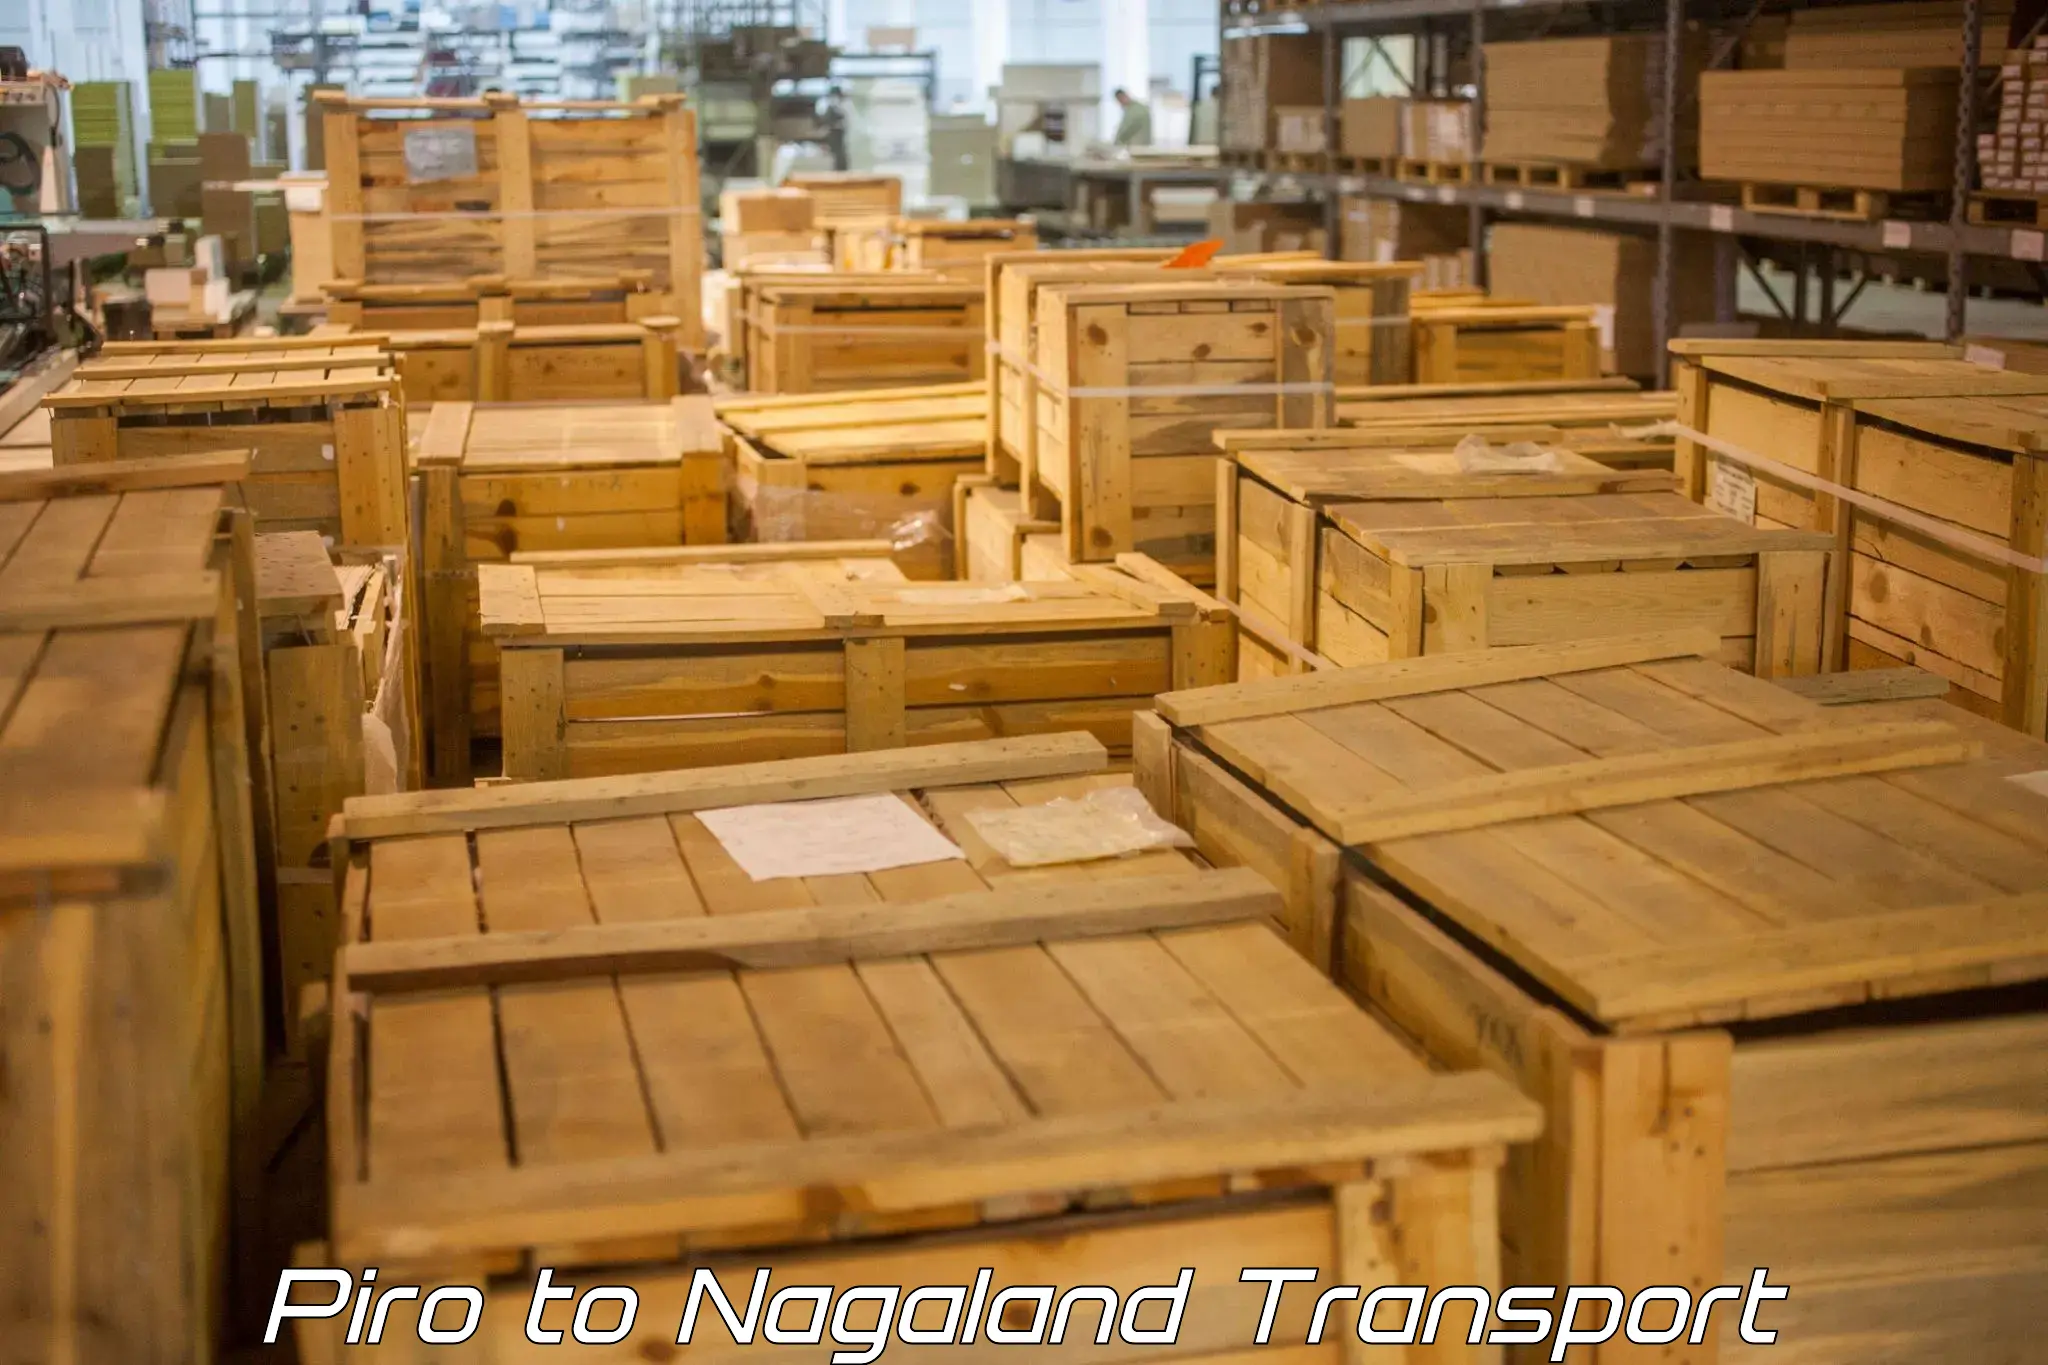 Cargo transport services Piro to Nagaland